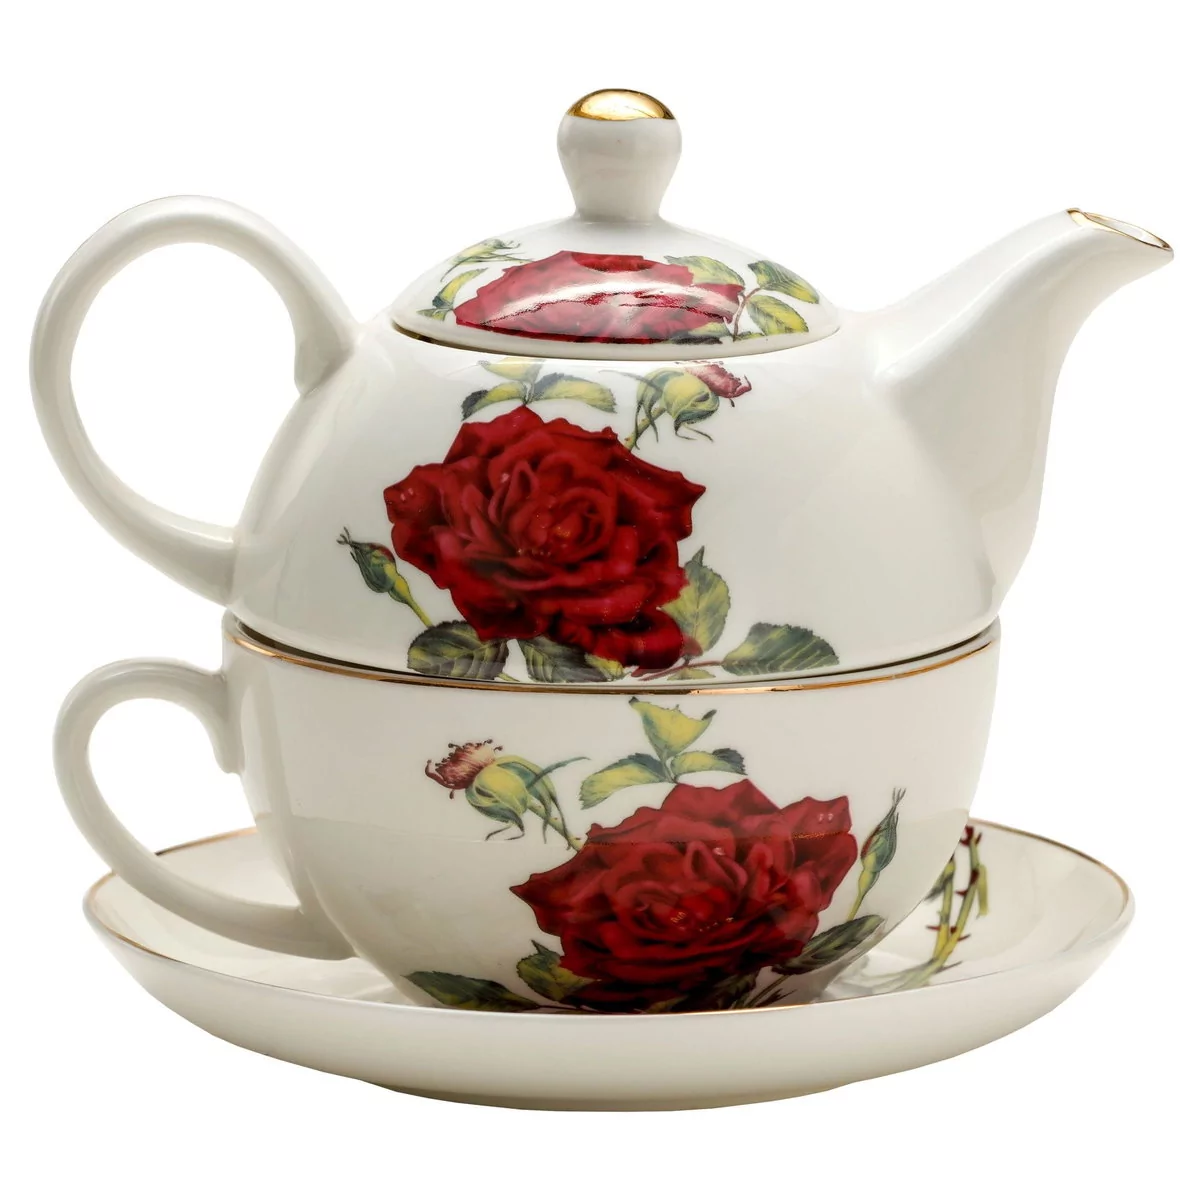 Marco Polo SJ Dzbanek Do Herbaty I Kawy Porcelanowy Z Filiżanką I Spodkiem Czerwona Róża Biały 0,45 L